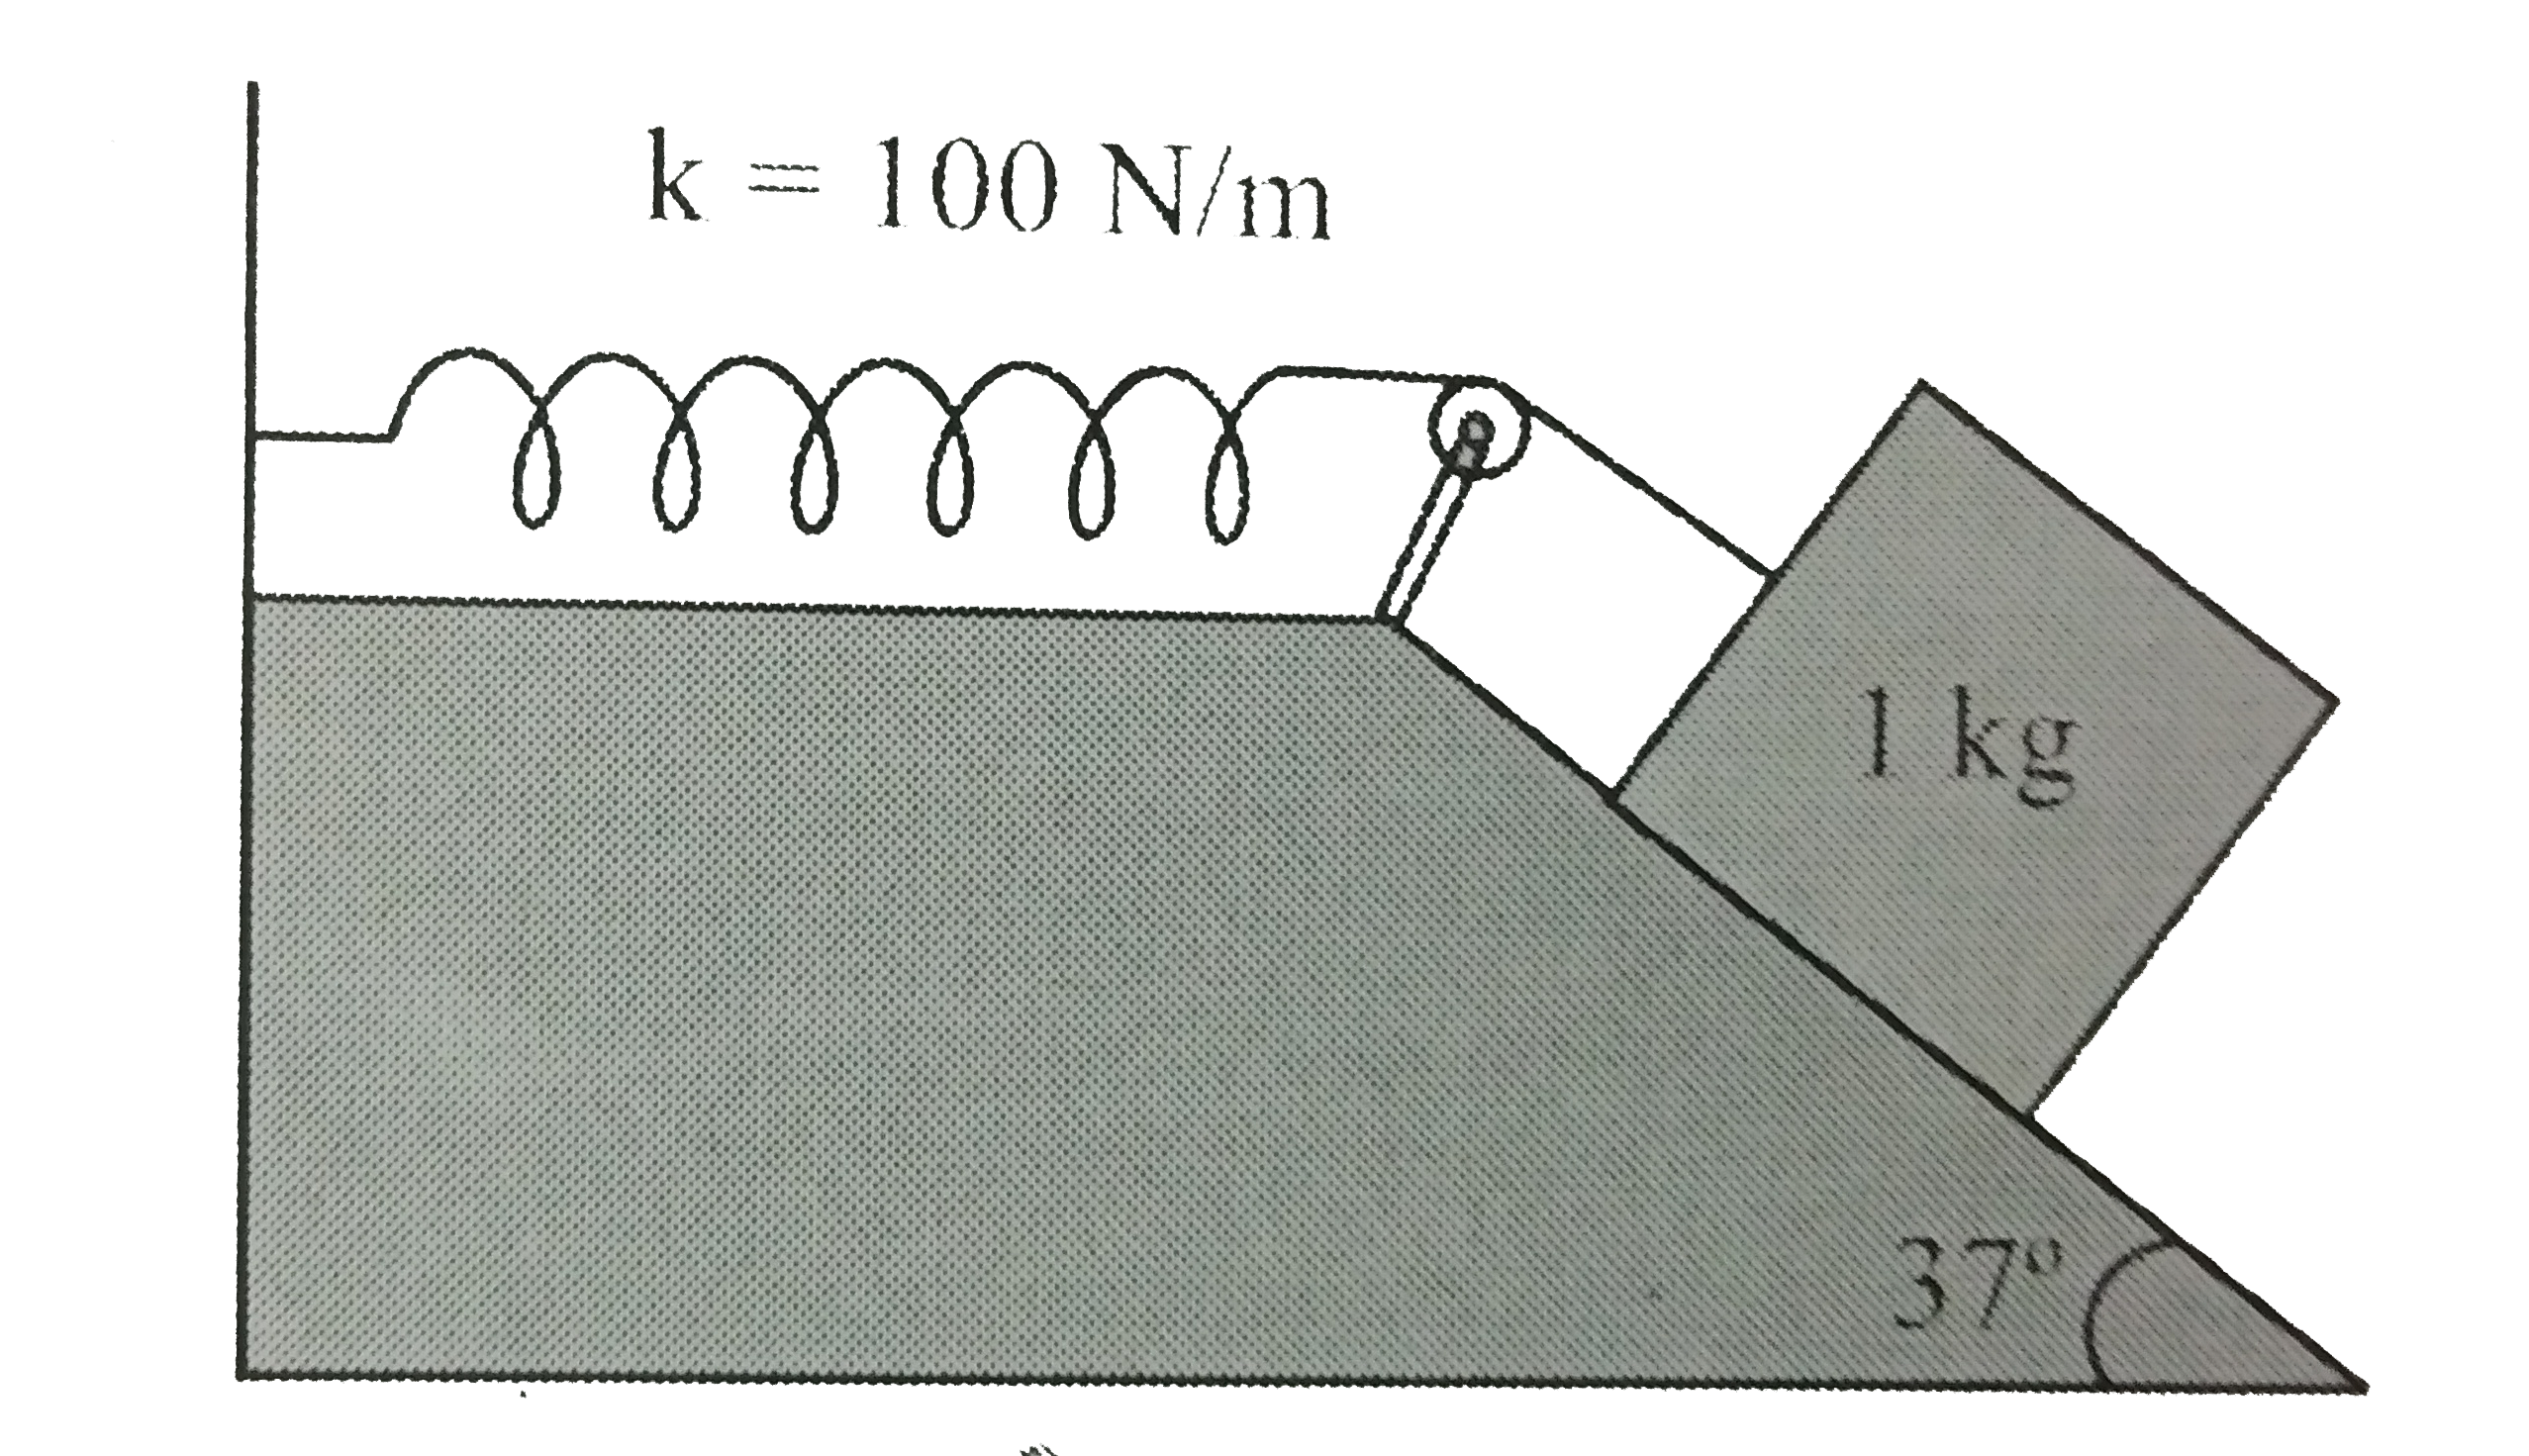 किसी रुक्ष आनल तल पर रखा हुआ 1 kg द्रव्यमान का गुटका किसी 100 N m^(-1) स्प्रिंग नियतांक वाले स्प्रिंग से दिए गए चित्र 6.17 के अनुसार जुड़ा है। गुटके को स्प्रिंग कि बिना खिंचा स्थिति में, विरामावस्थ से छोड़ा जाता है। गुटका विरामावस्थ में आने से पहले आनल तल पर 10 cm नीचे खिसक जाता है। गुटके और आनल तल में मध्य घर्षण गुणांक ज्ञात कीजिए। मान लीजिये कि स्प्रिंग का द्रव्यमान उपेक्षणीय है और घिरनी घर्षणरहित है।